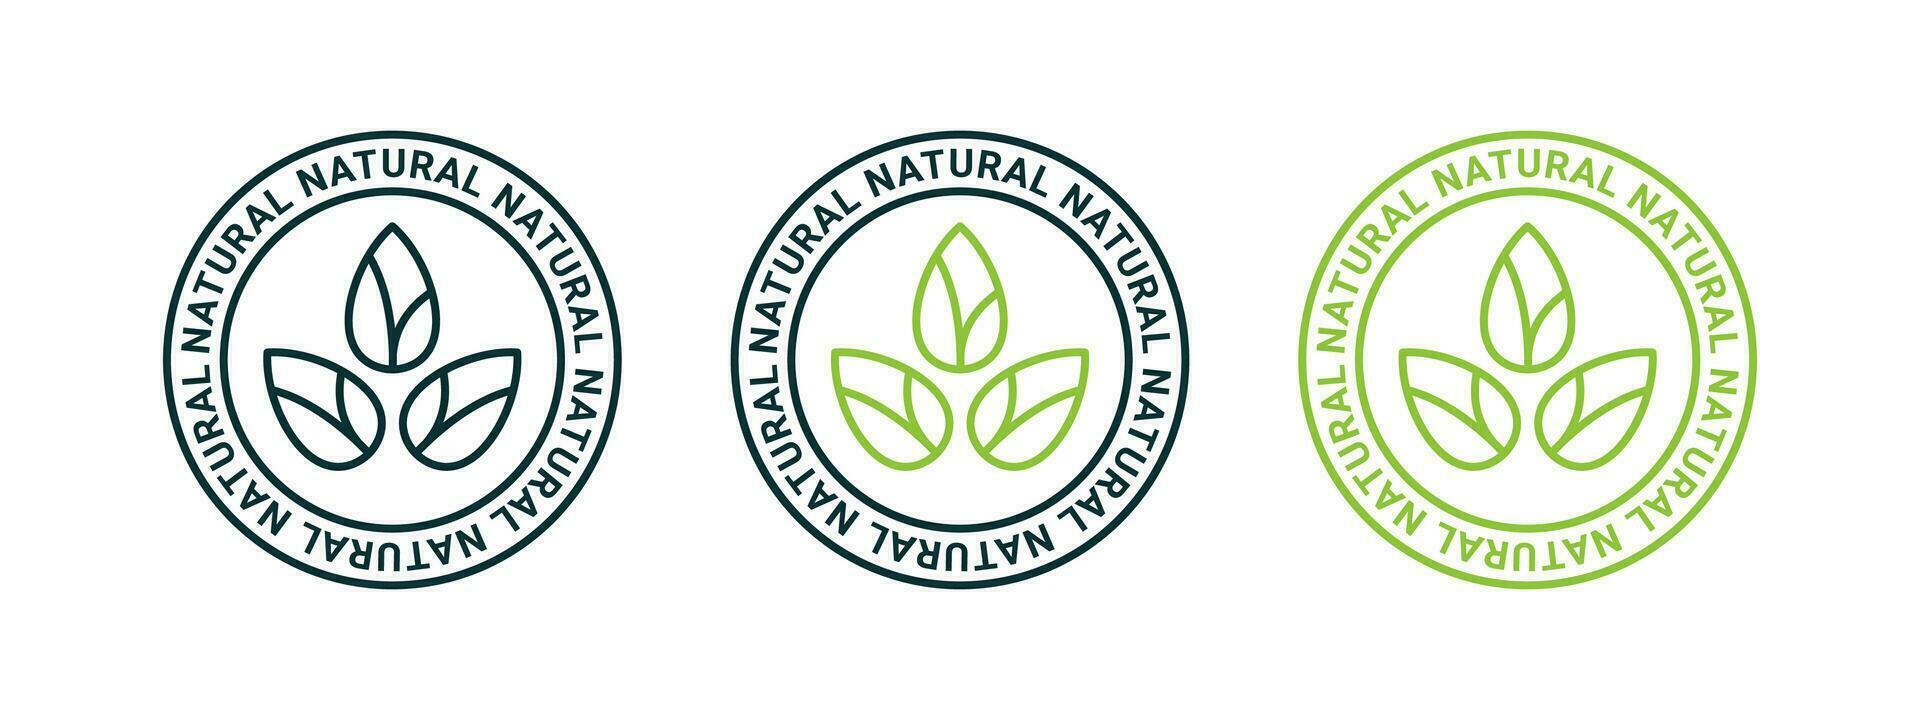 natural produtos ícones. natural e orgânico produtos. vetor escalável gráficos